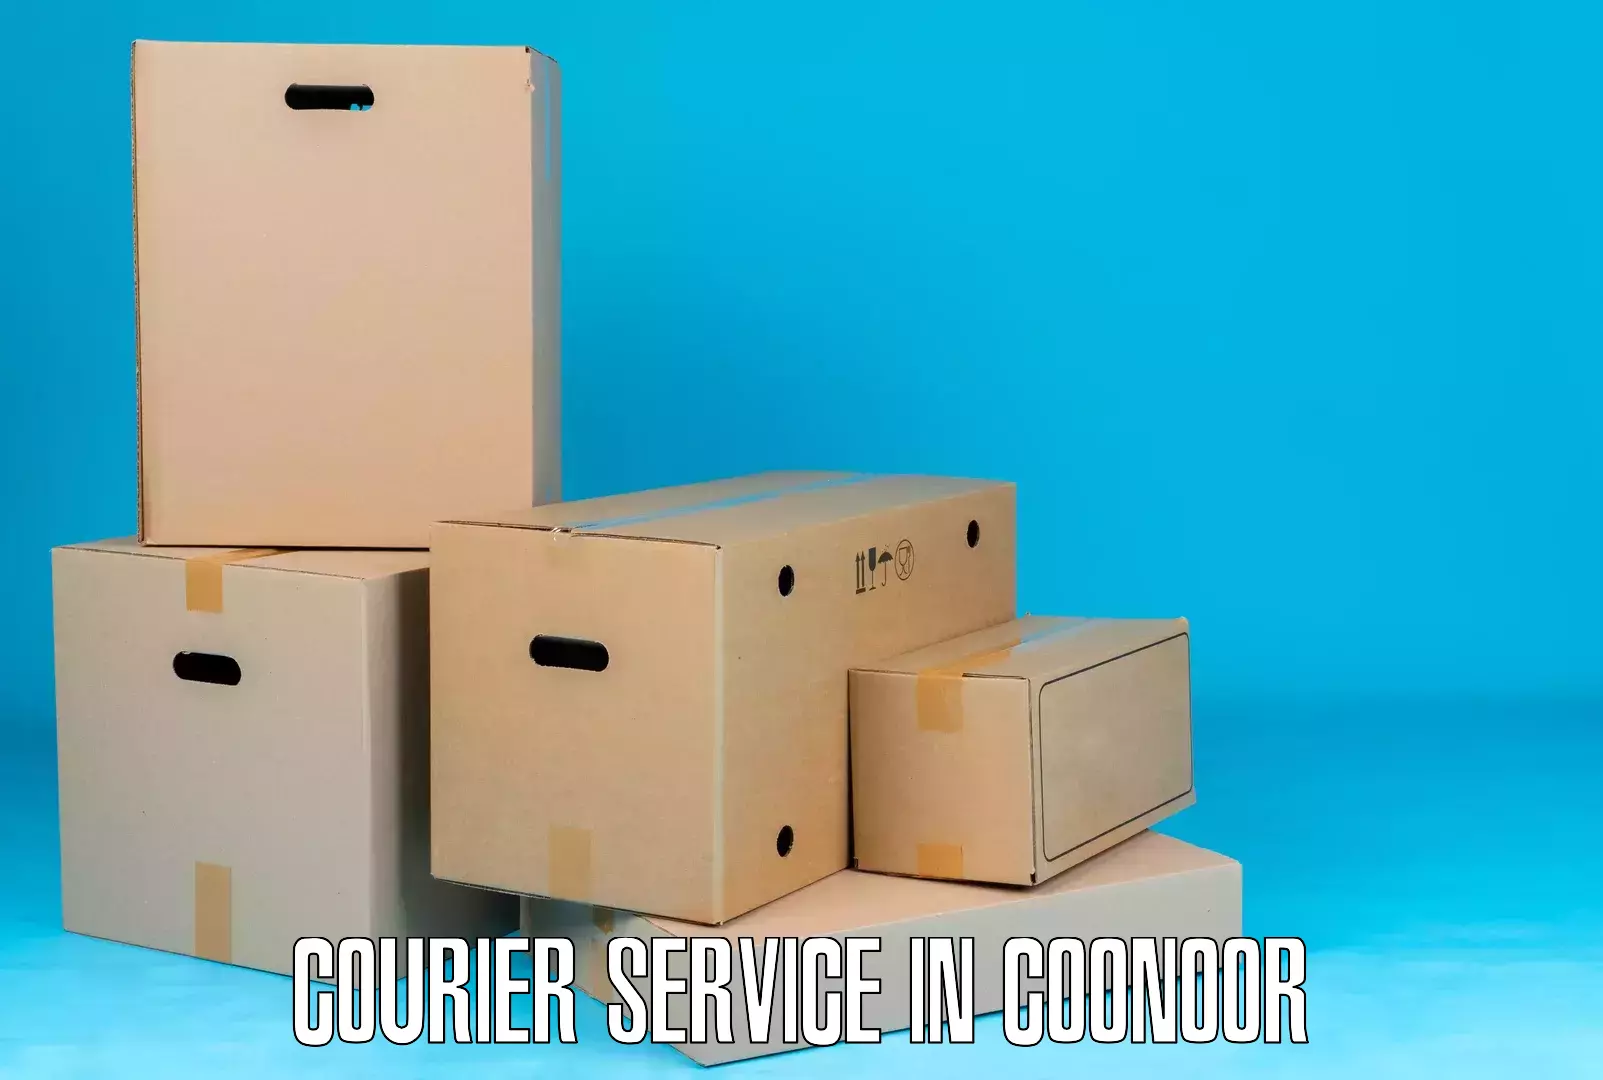 Urban courier service in Coonoor